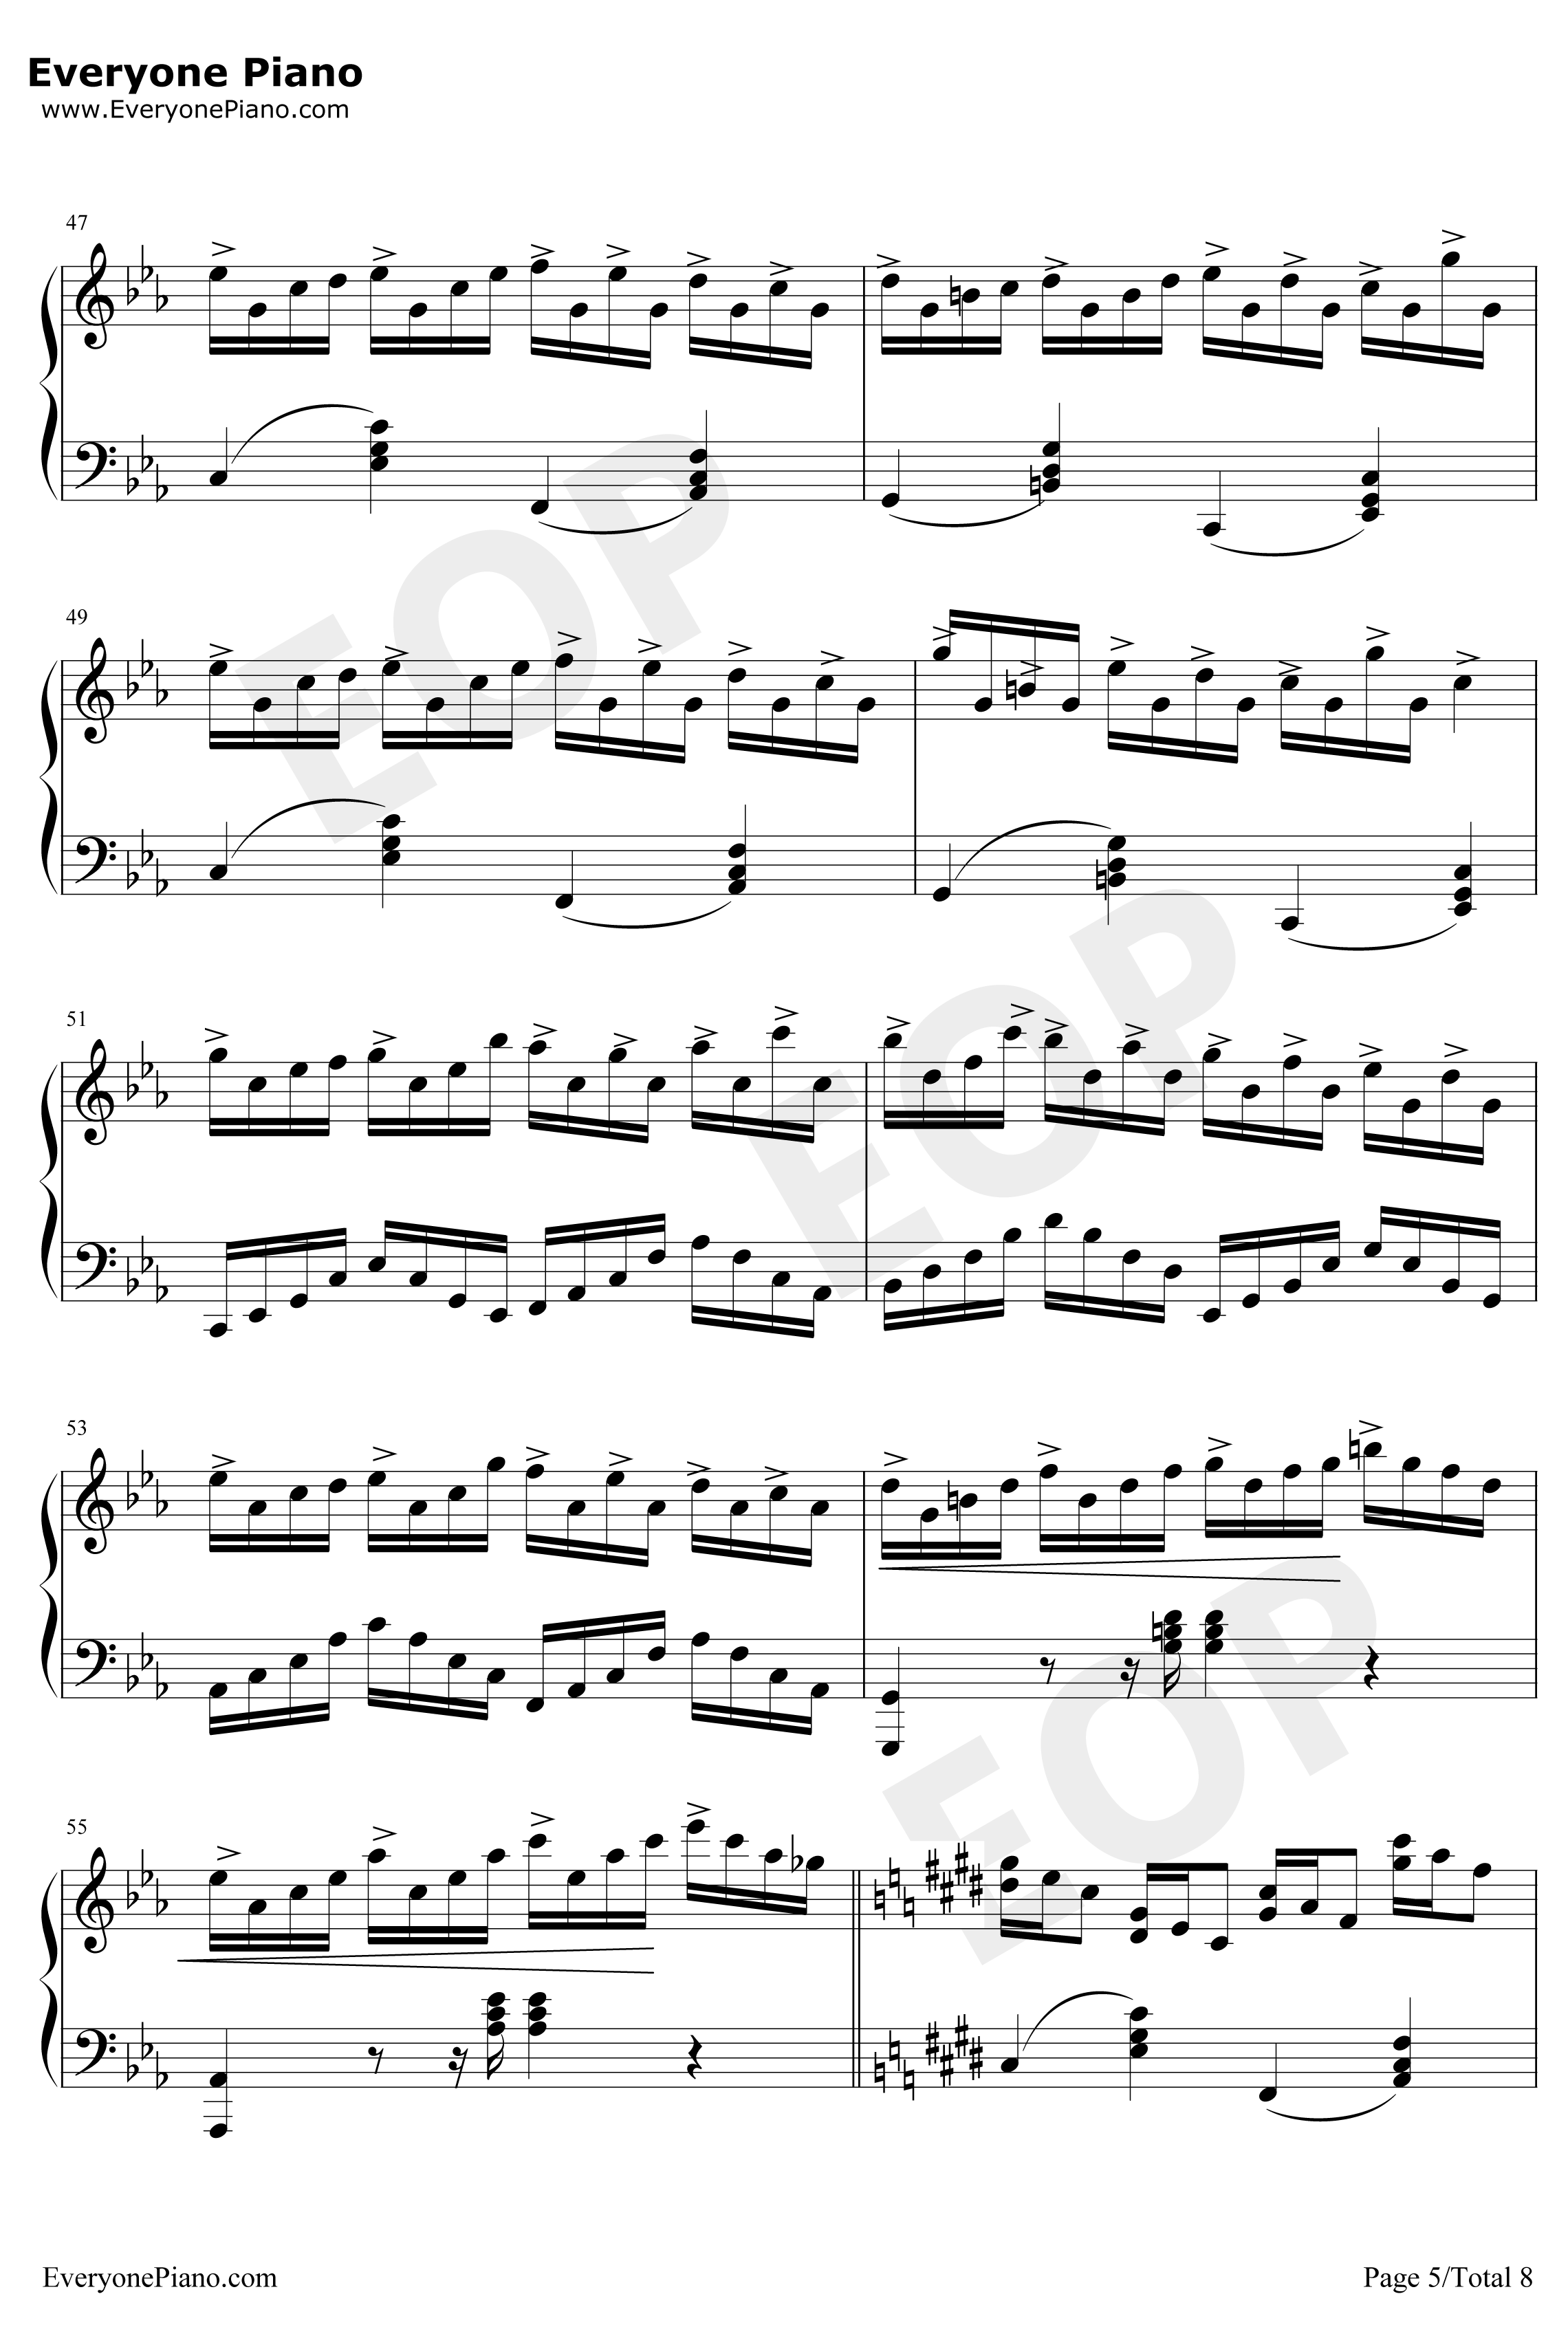 克罗地亚狂想曲钢琴谱-完美版-马克西姆5